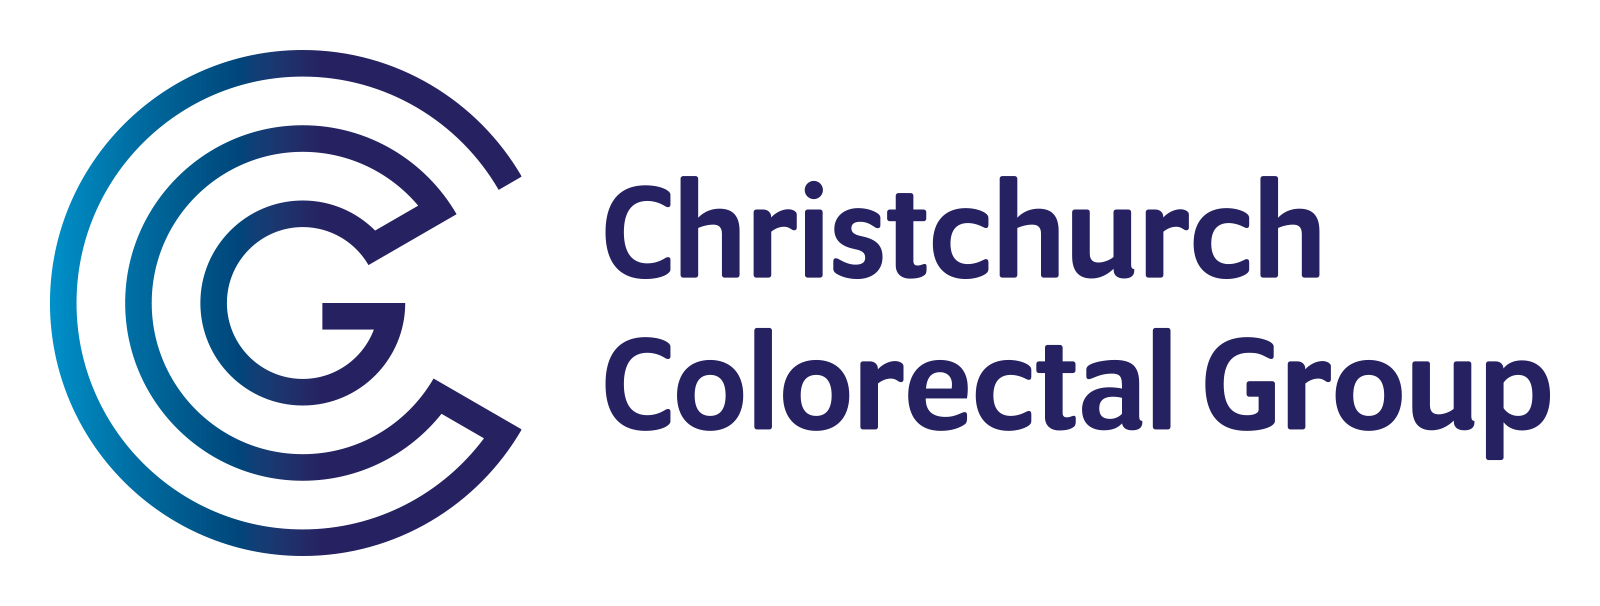 Christchurch Colorectal